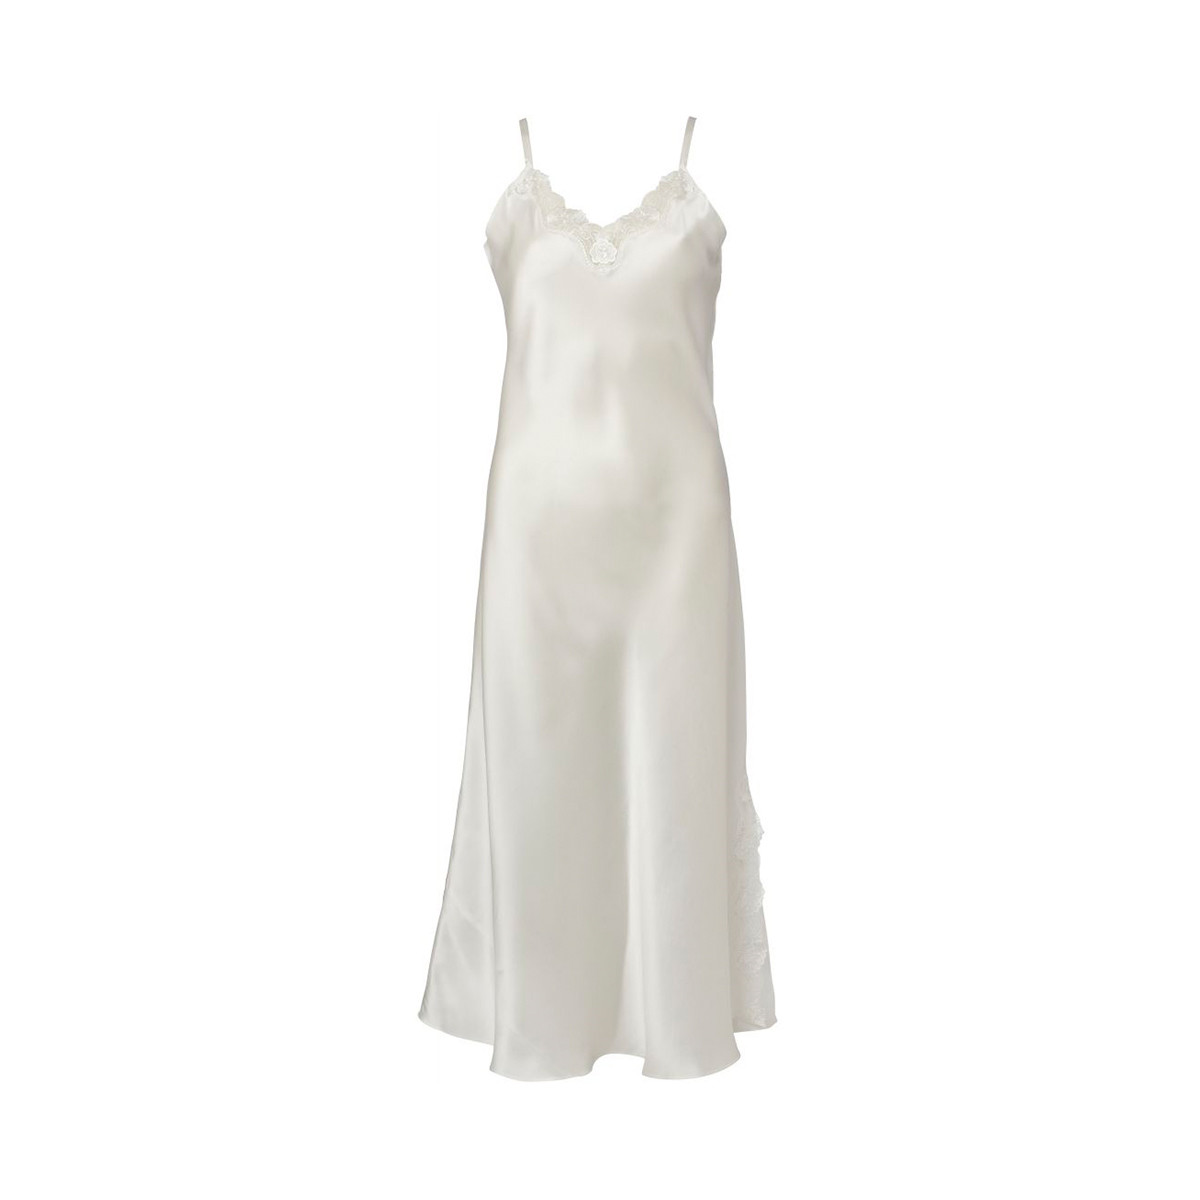 Lady Avenue Silk Jersey Natkjole, Farve: Hvid, Størrelse: XS, Dame